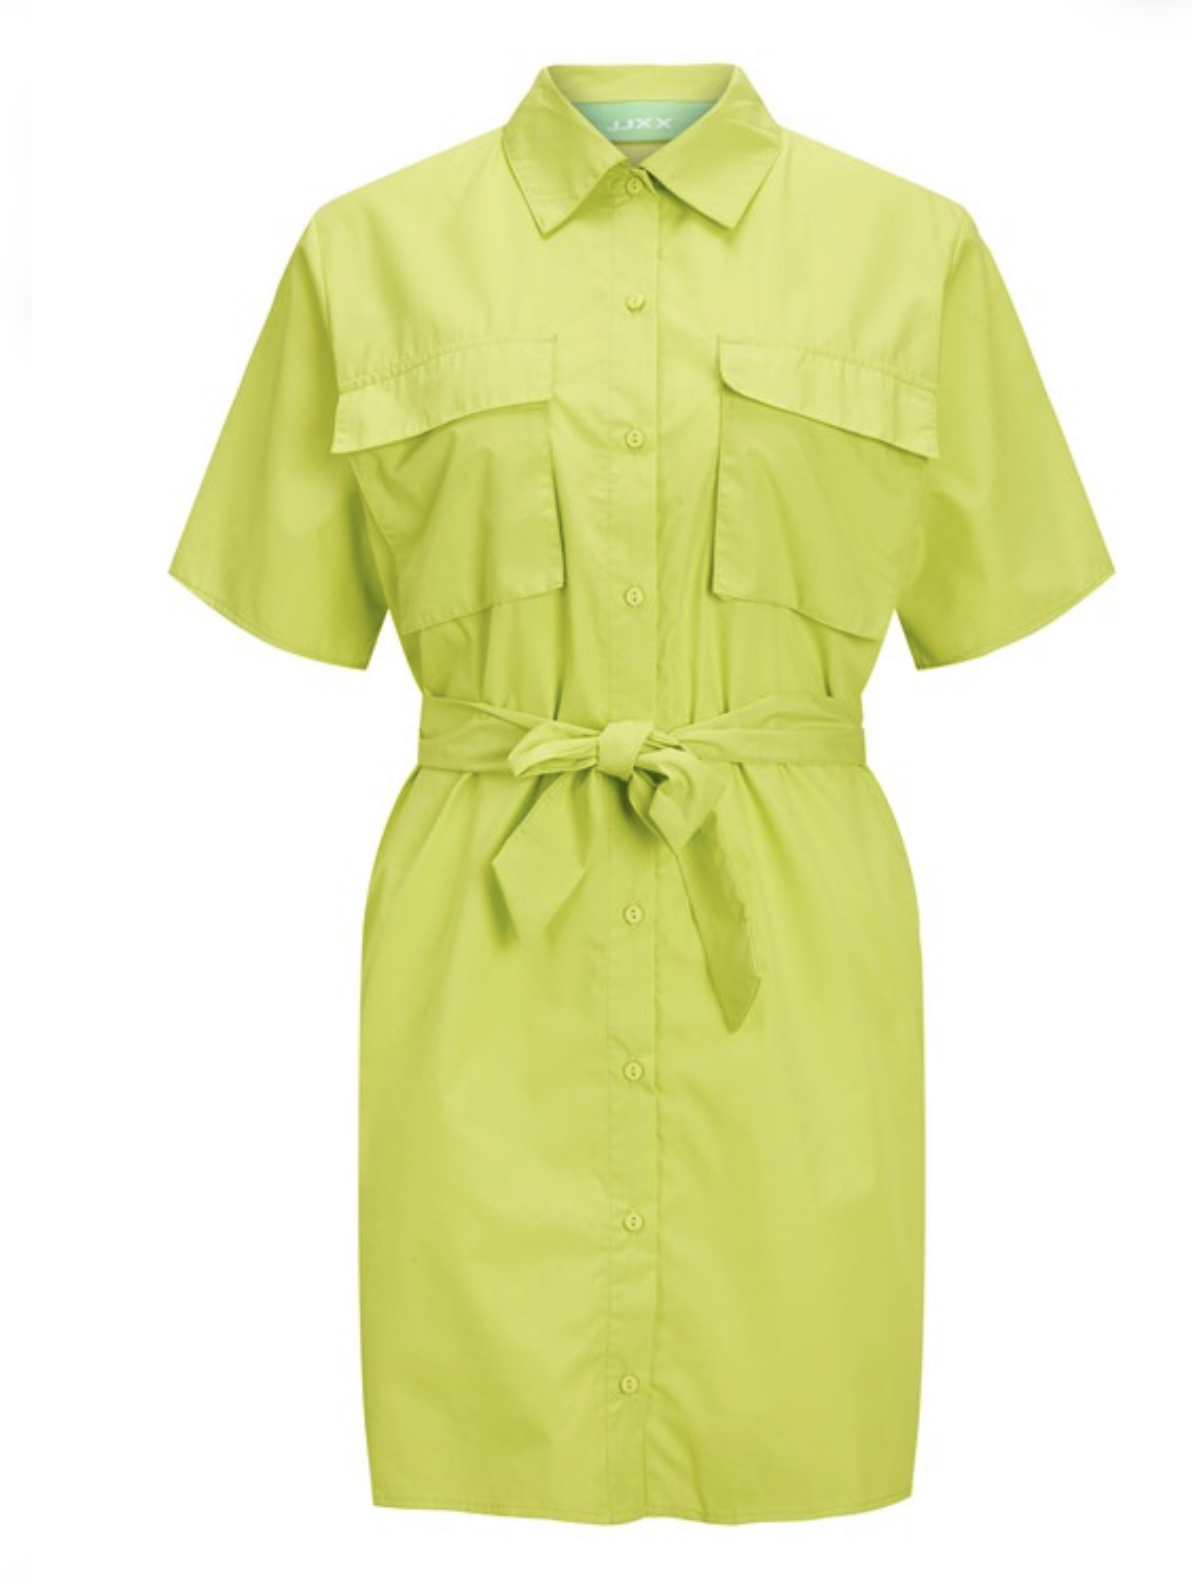 پیراهن زنانه Vera moda سبز - دارا مد